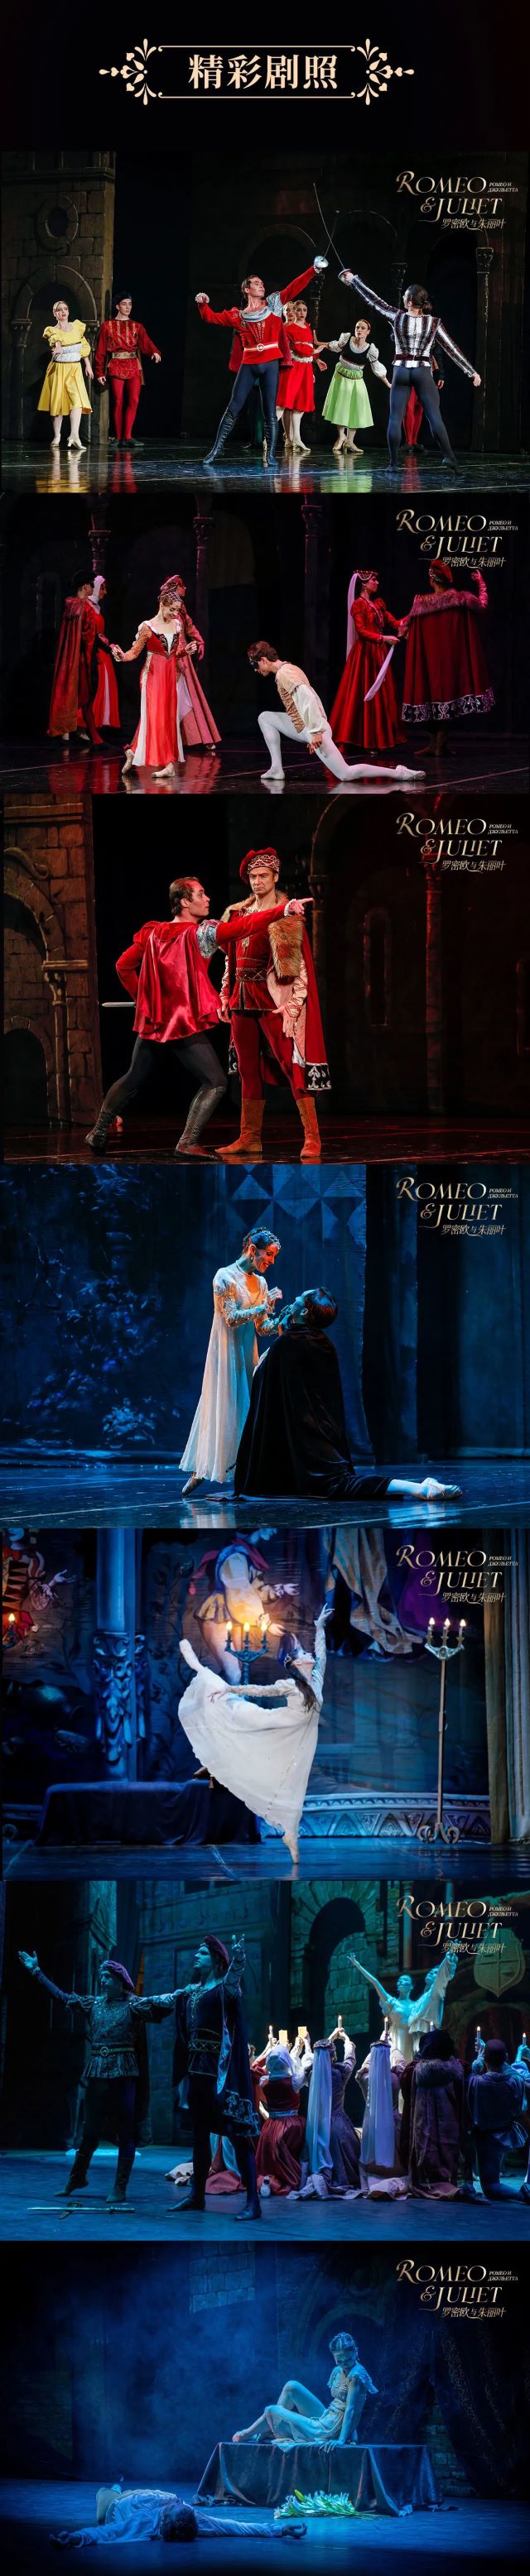 俄罗斯莫斯科芭蕾舞团《罗密欧与朱丽叶》 4.jpg